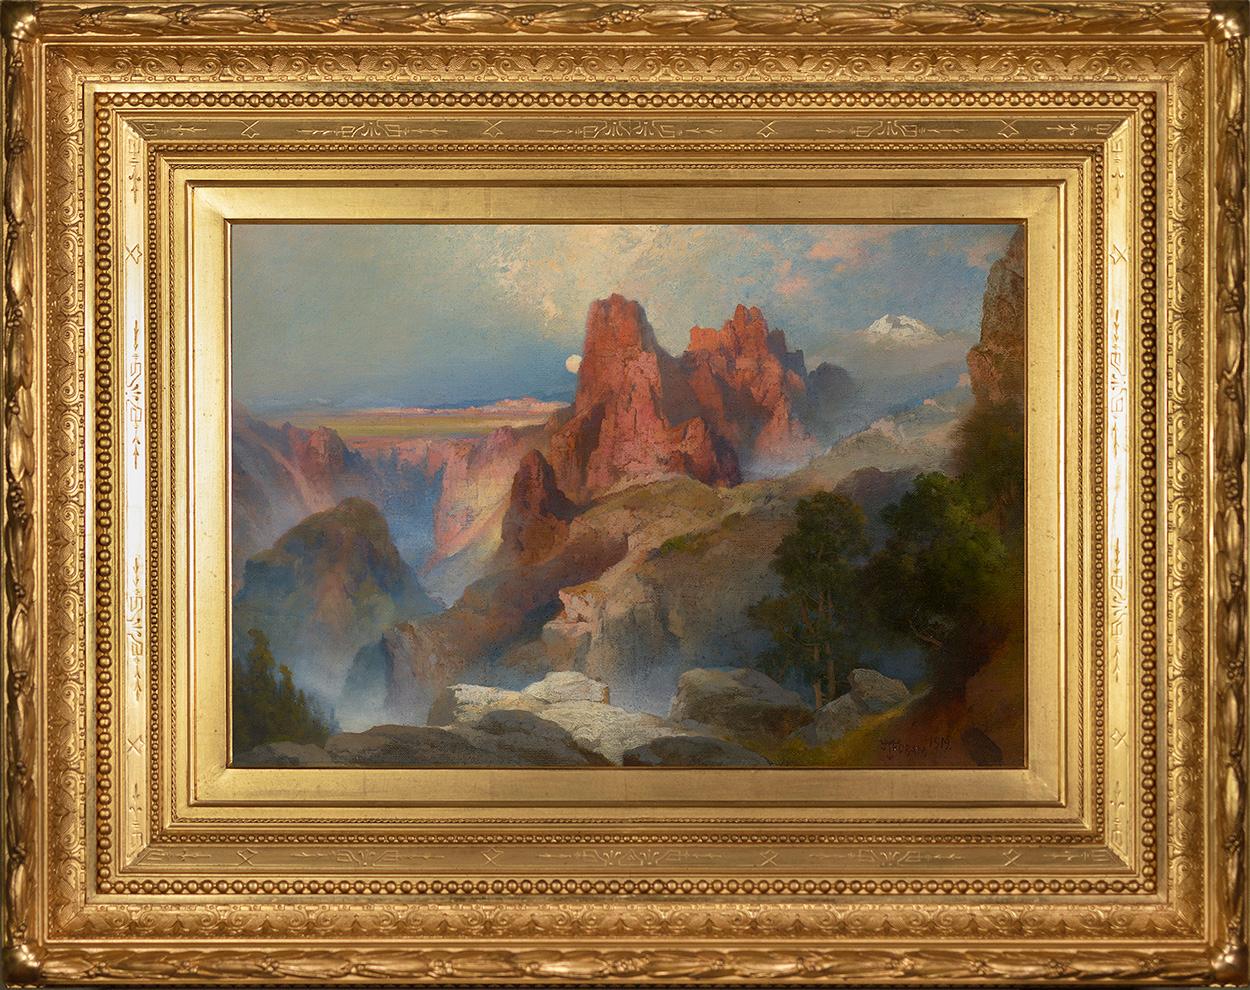 Grand Canyon - Painting by Thomas Moran